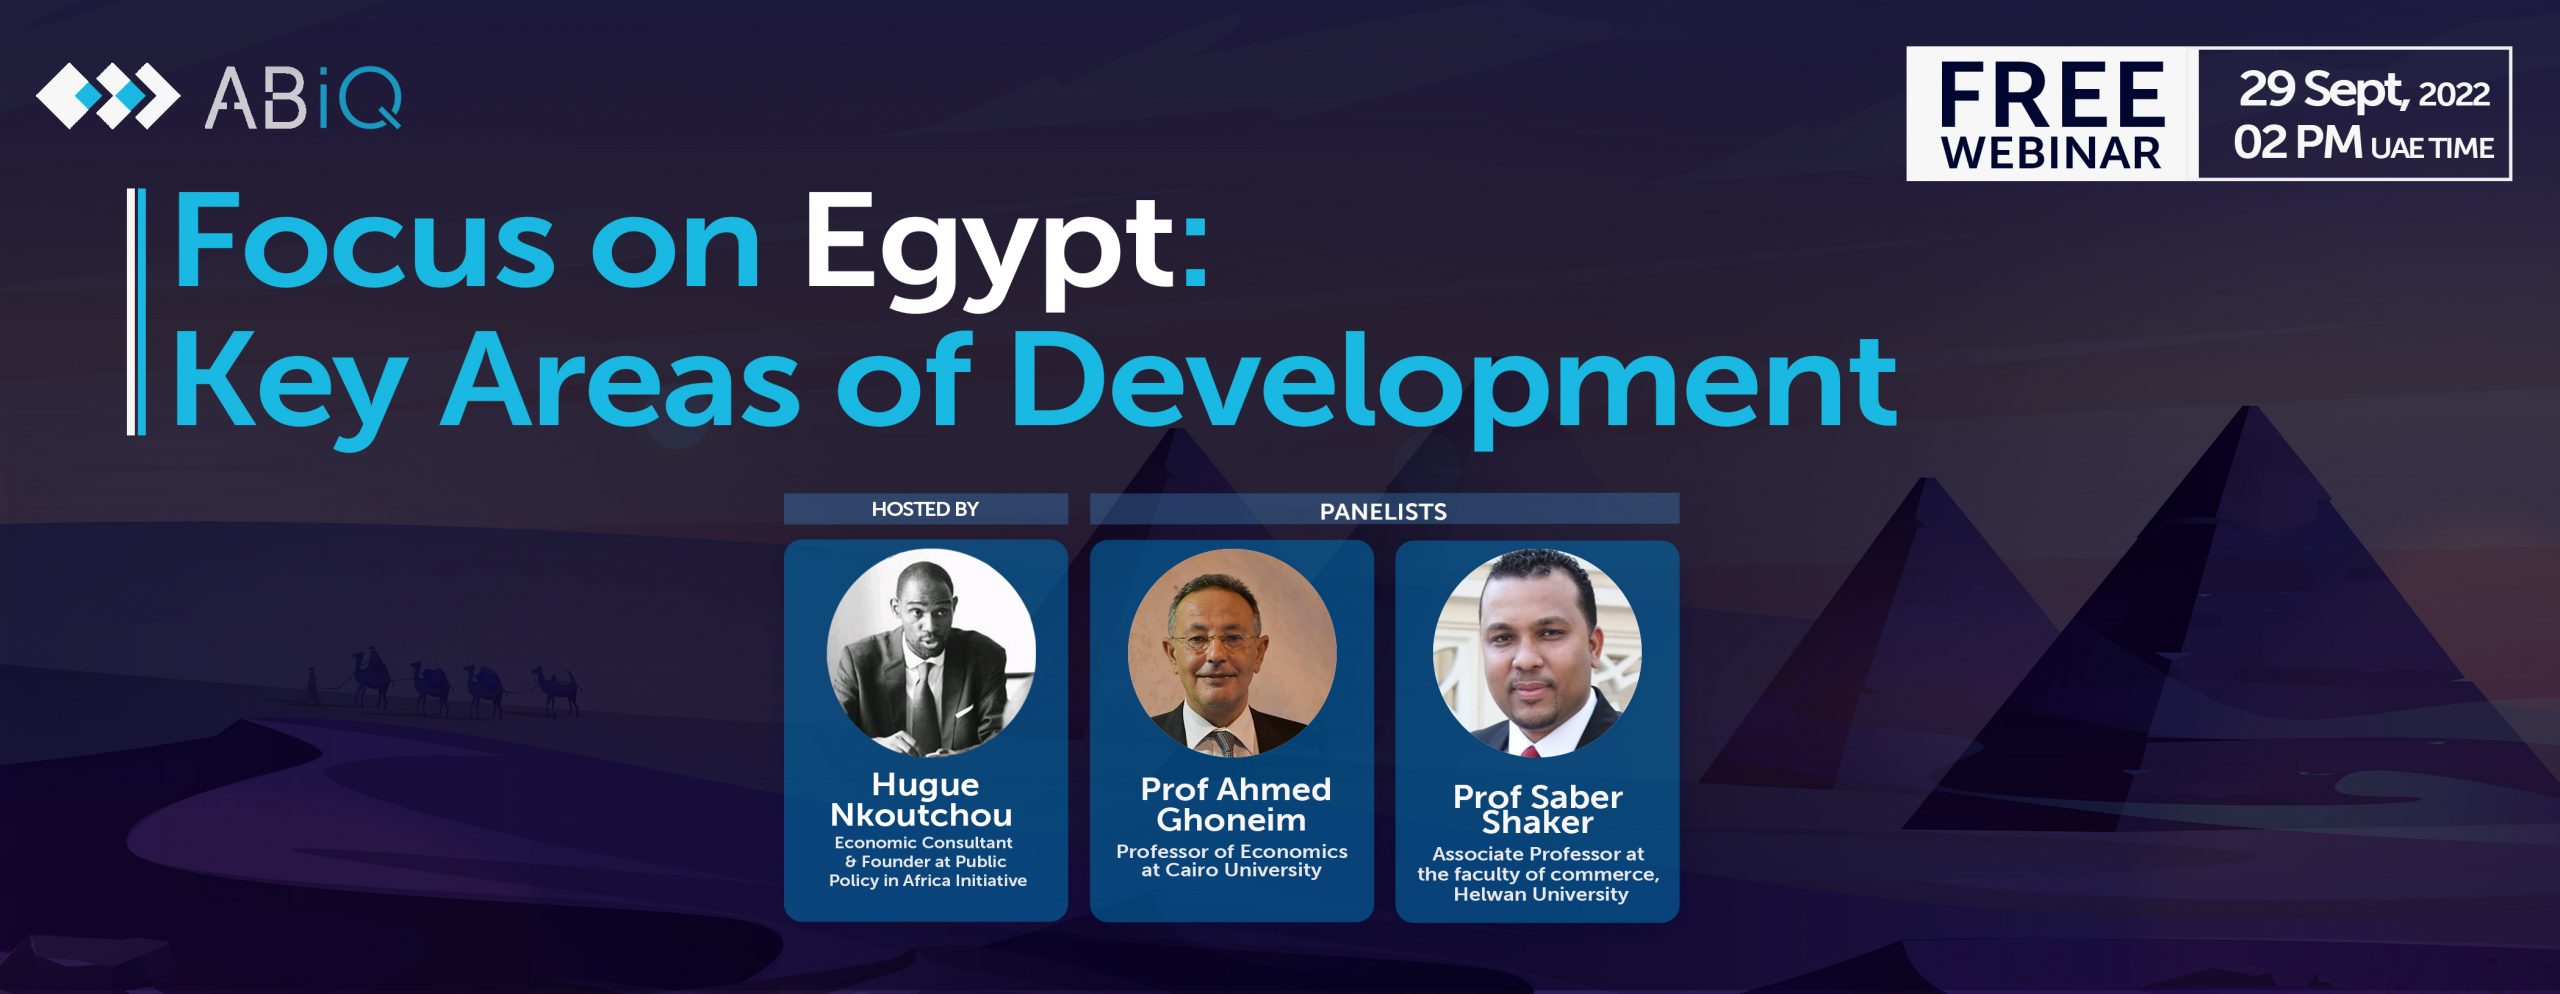 Webinar on key areas of Development in Egypt